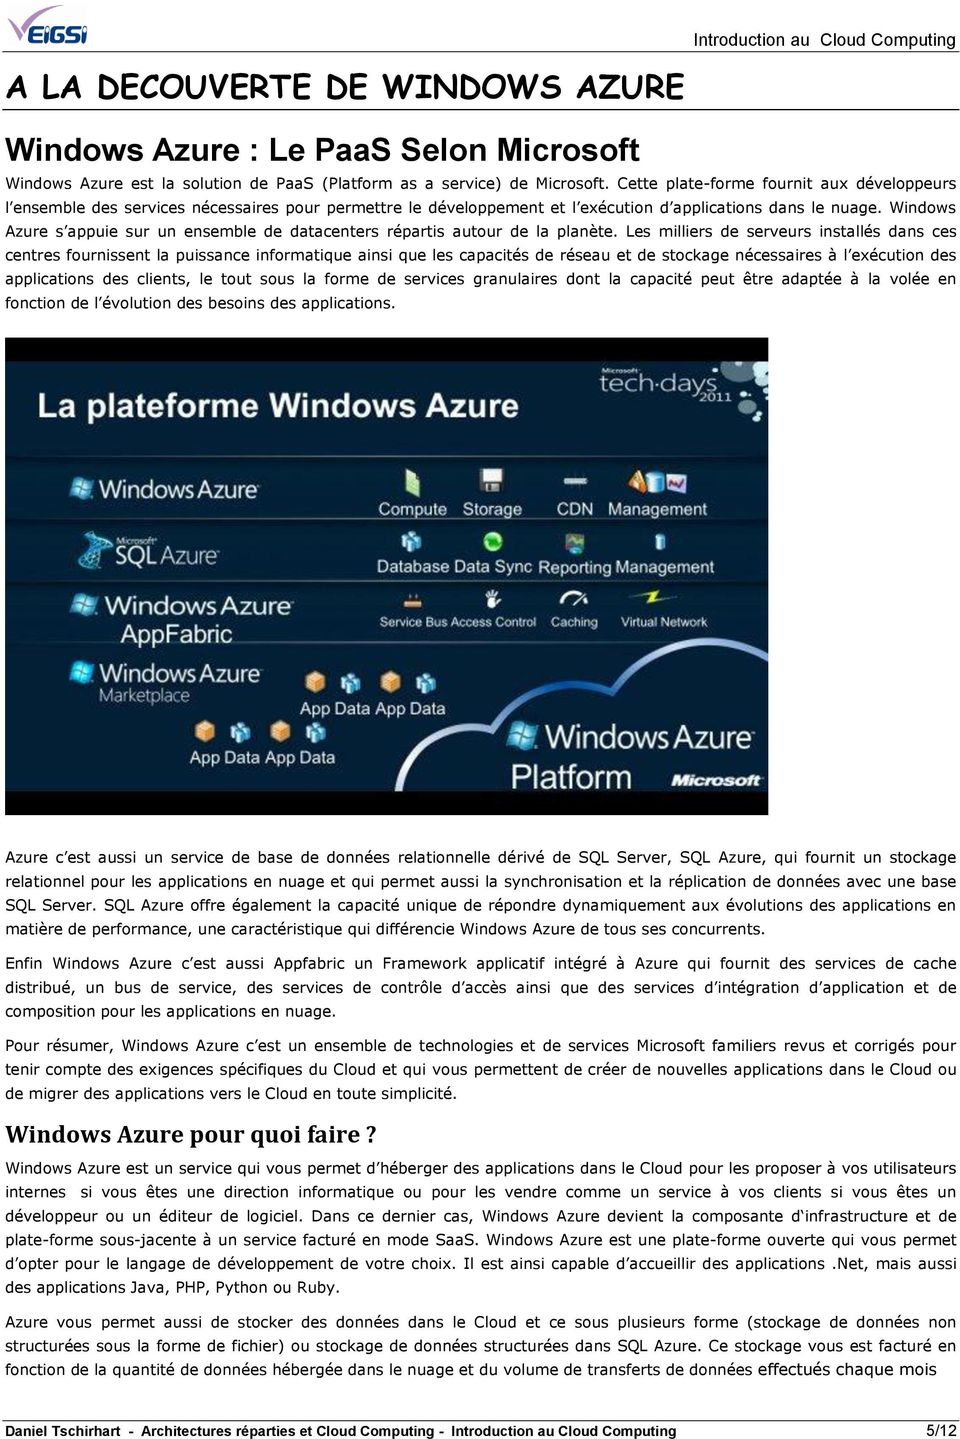 Windows Azure s appuie sur un ensemble de datacenters répartis autour de la planète.